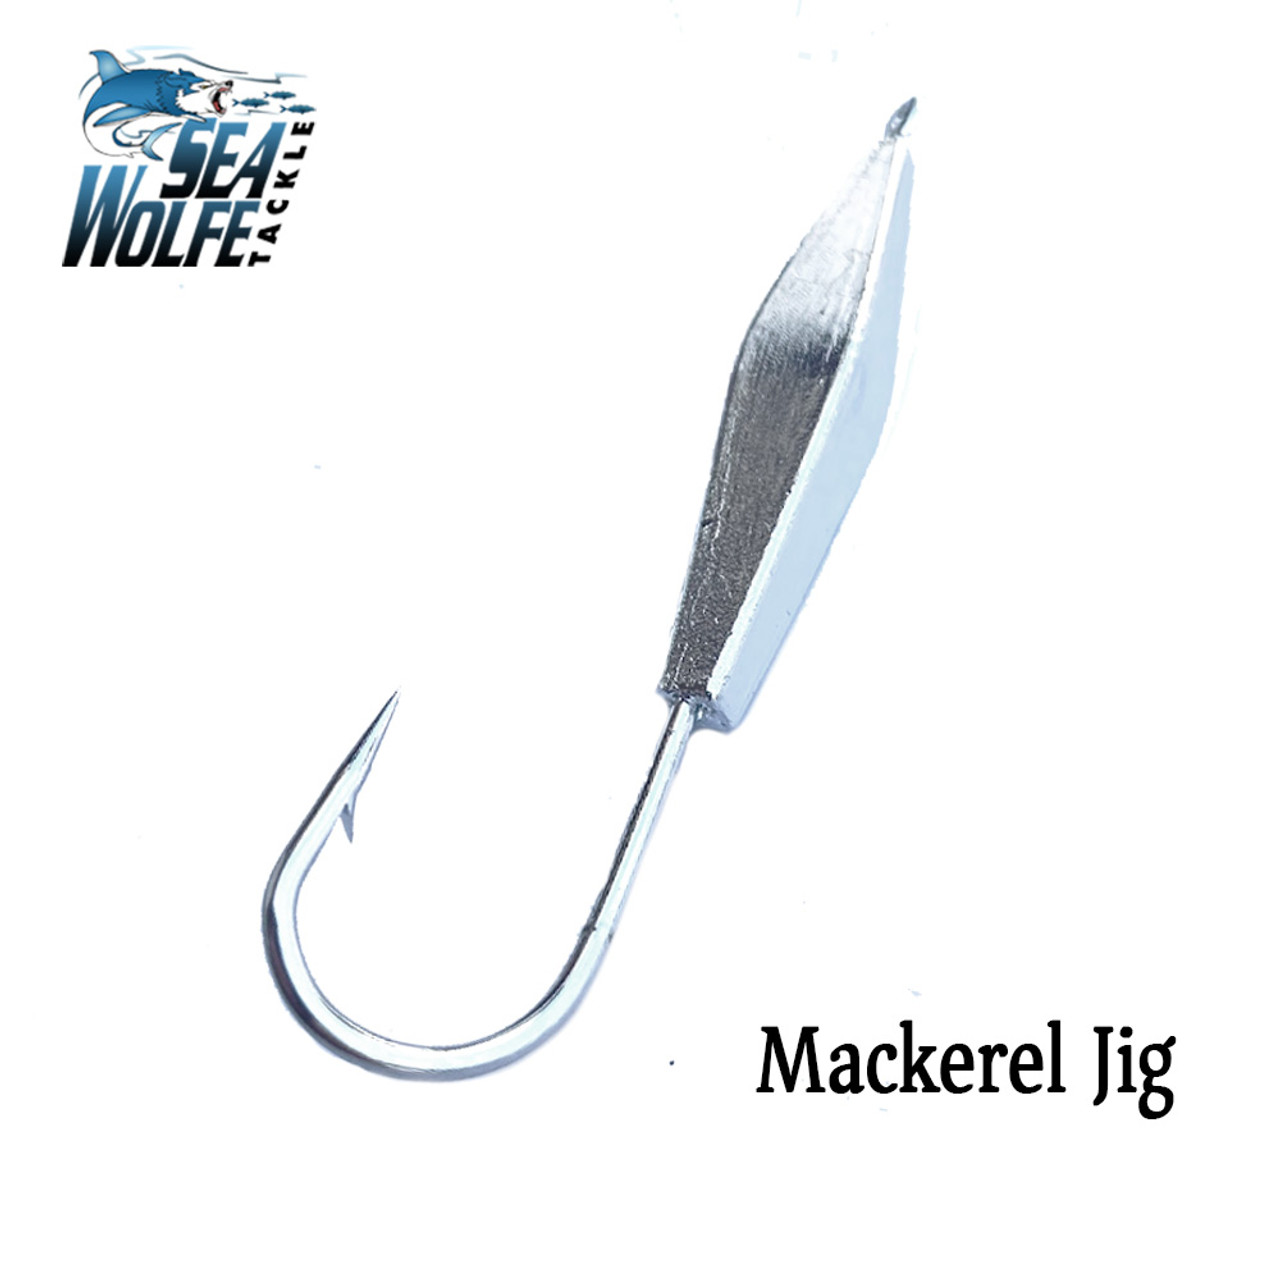 Sea Wolfe Mackerel Jigs